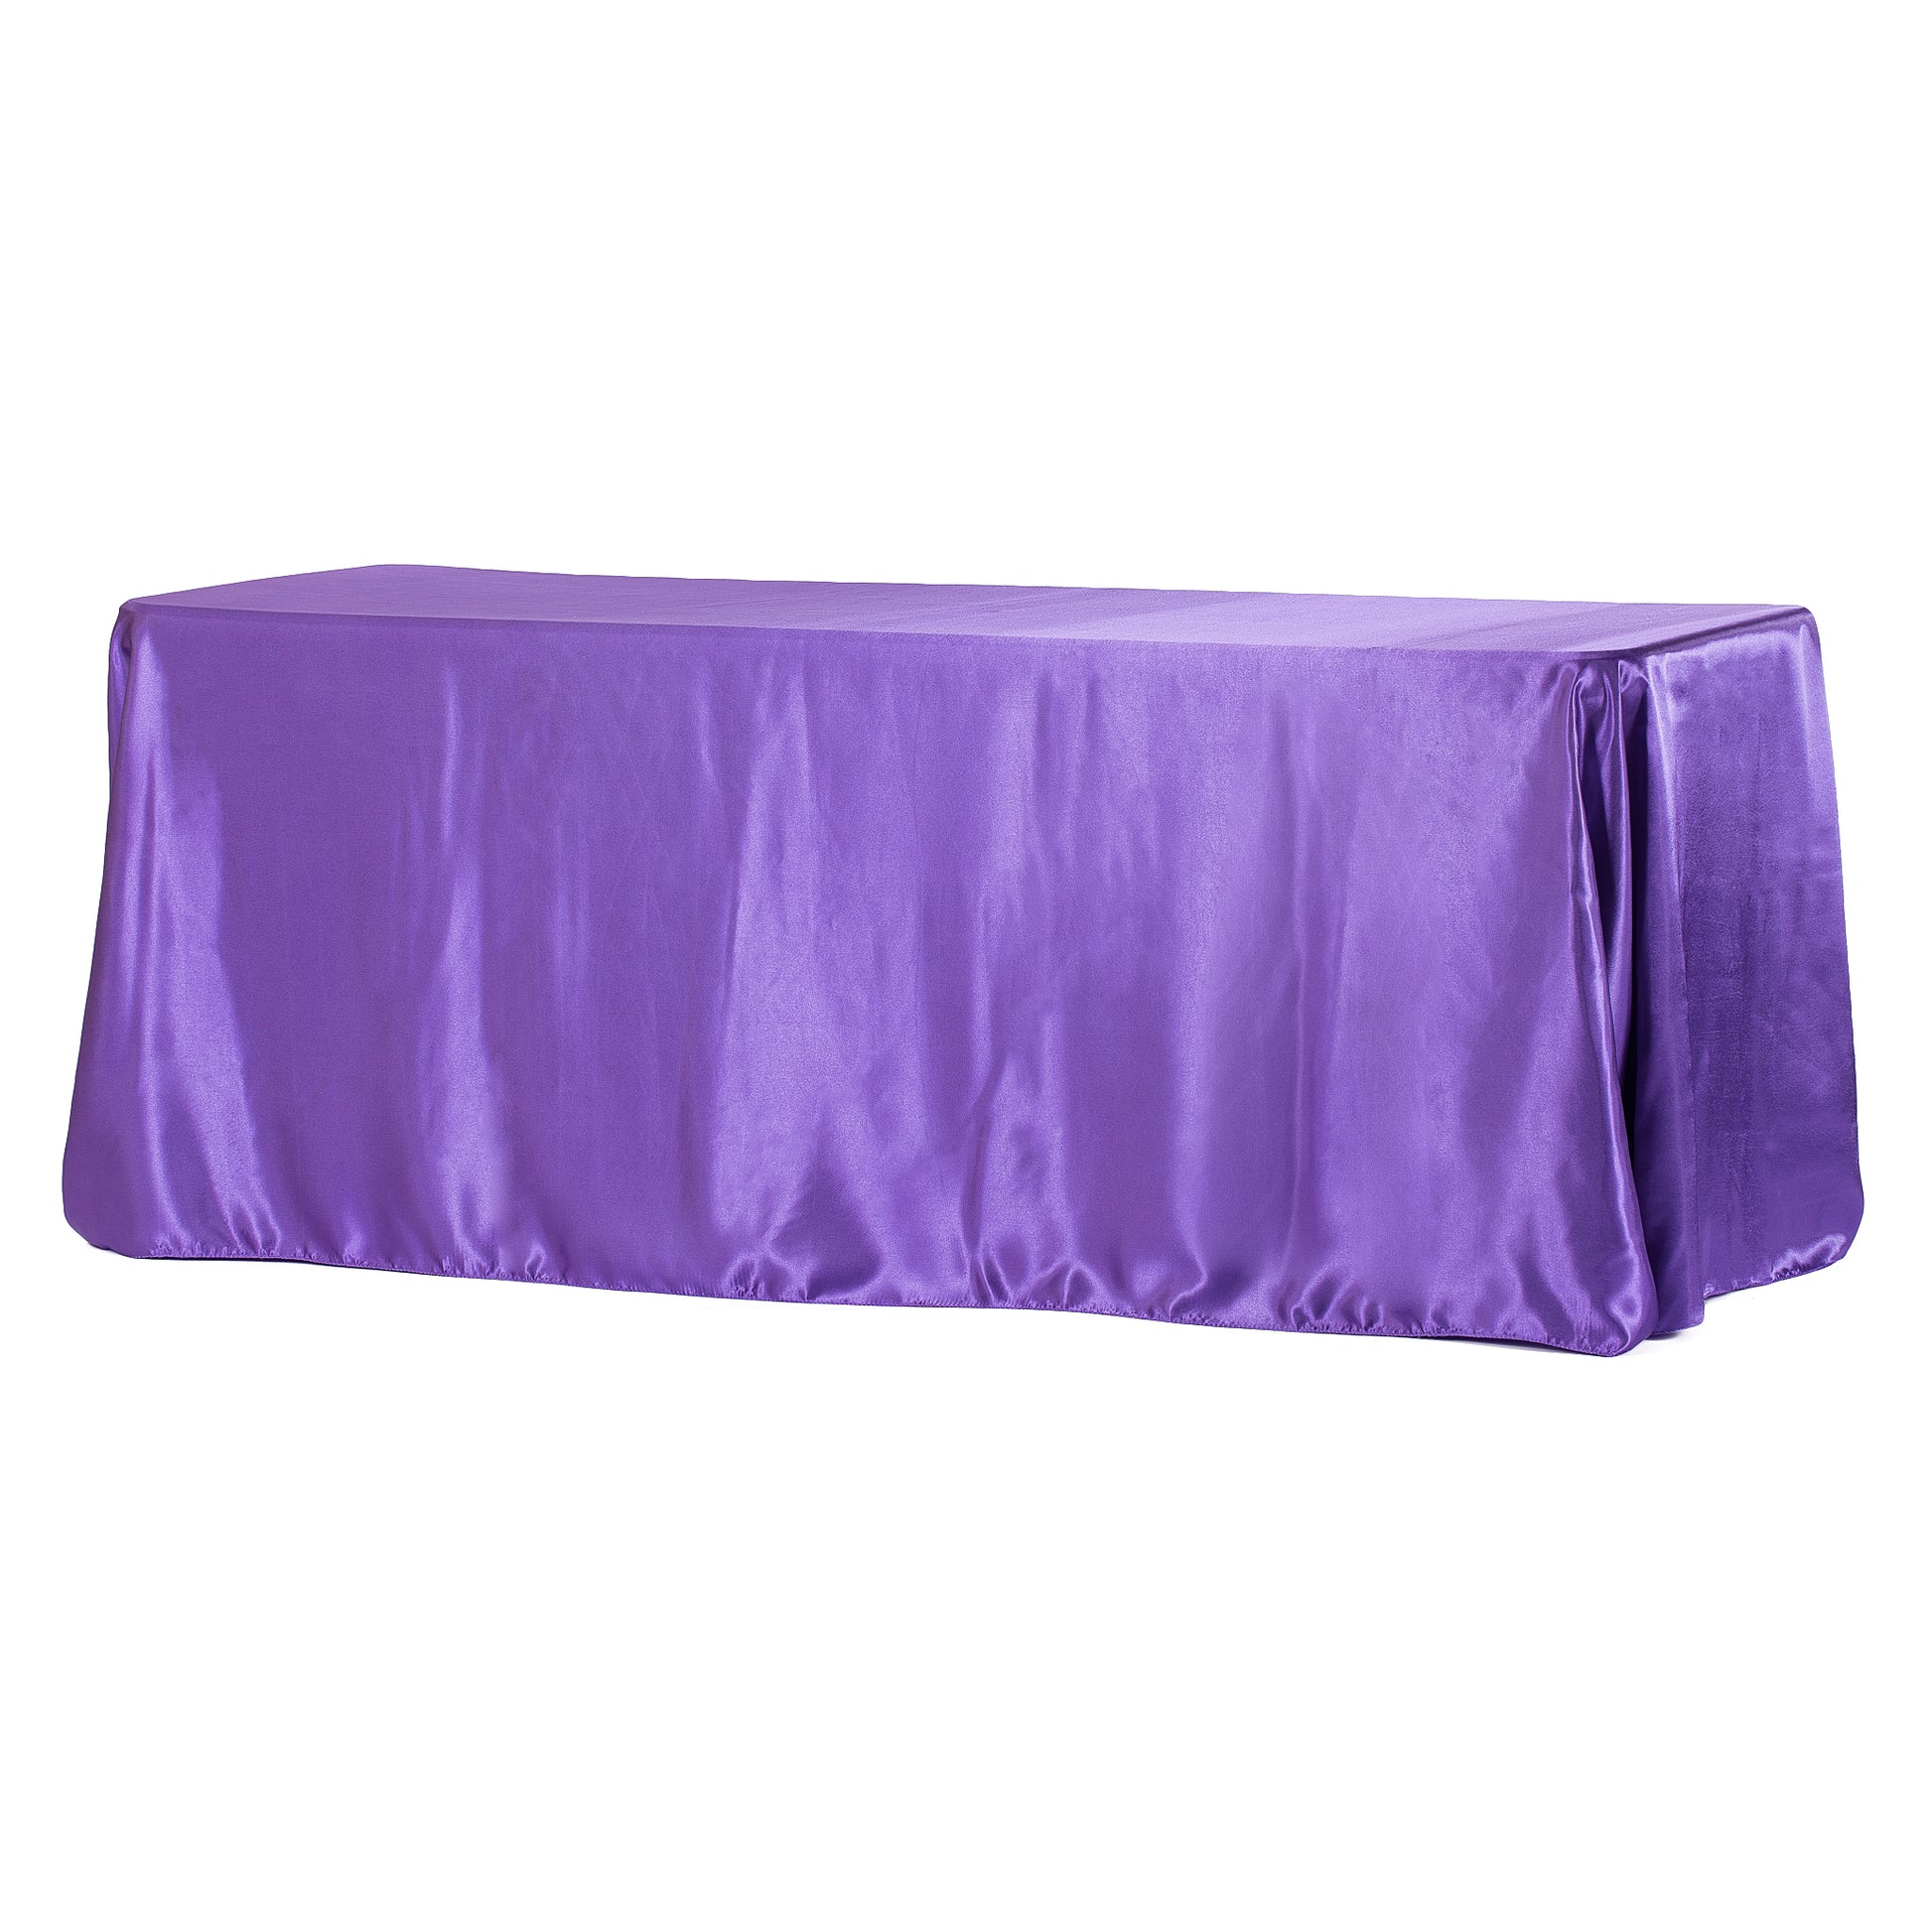 90"x156" Rectangular Satin Tablecloth - Purple